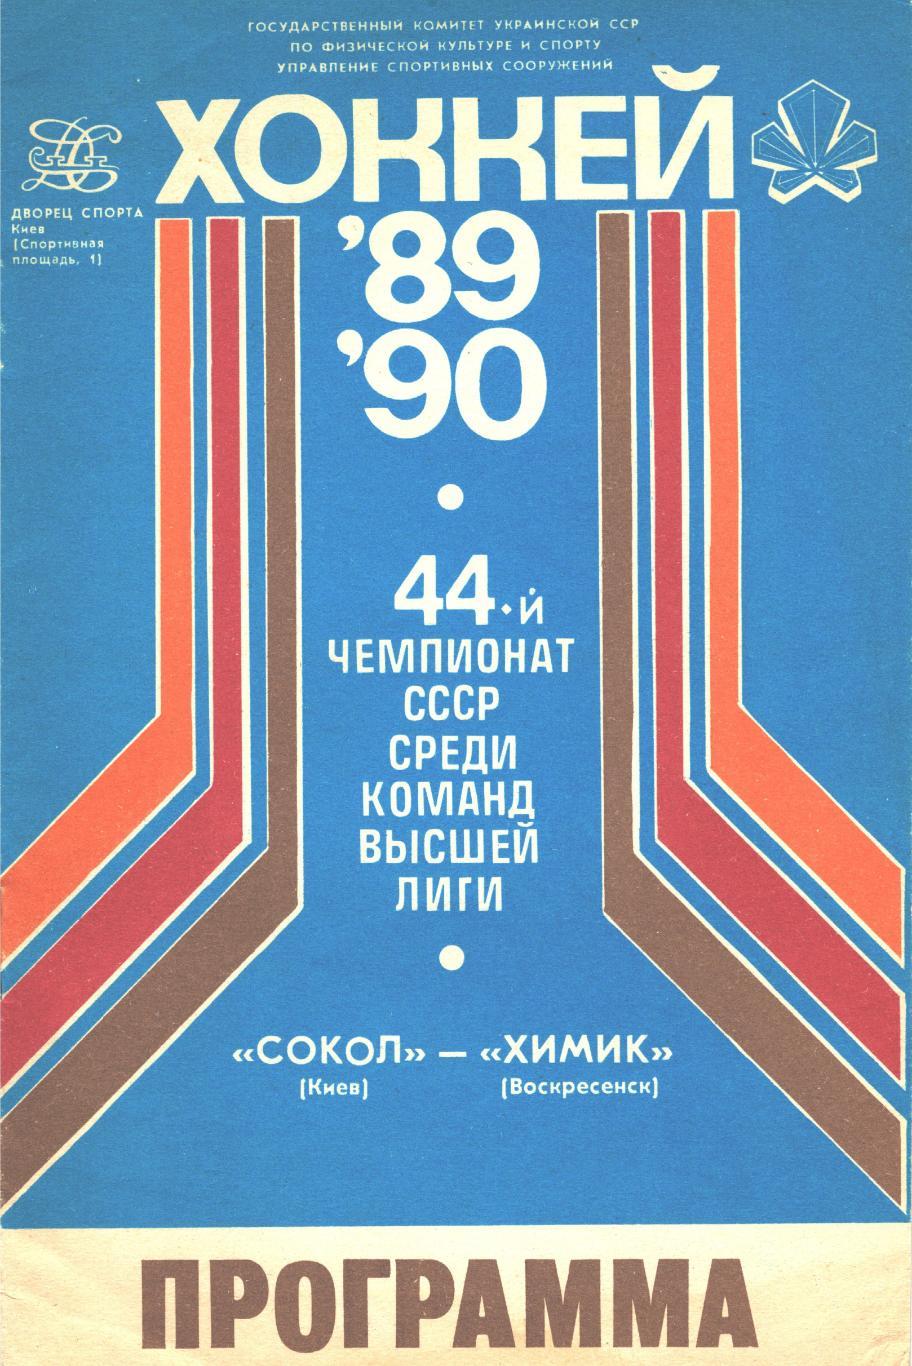 СОКОЛ (Киев) - ХИМИК (Воскресенск), 10 сентября 1989 года